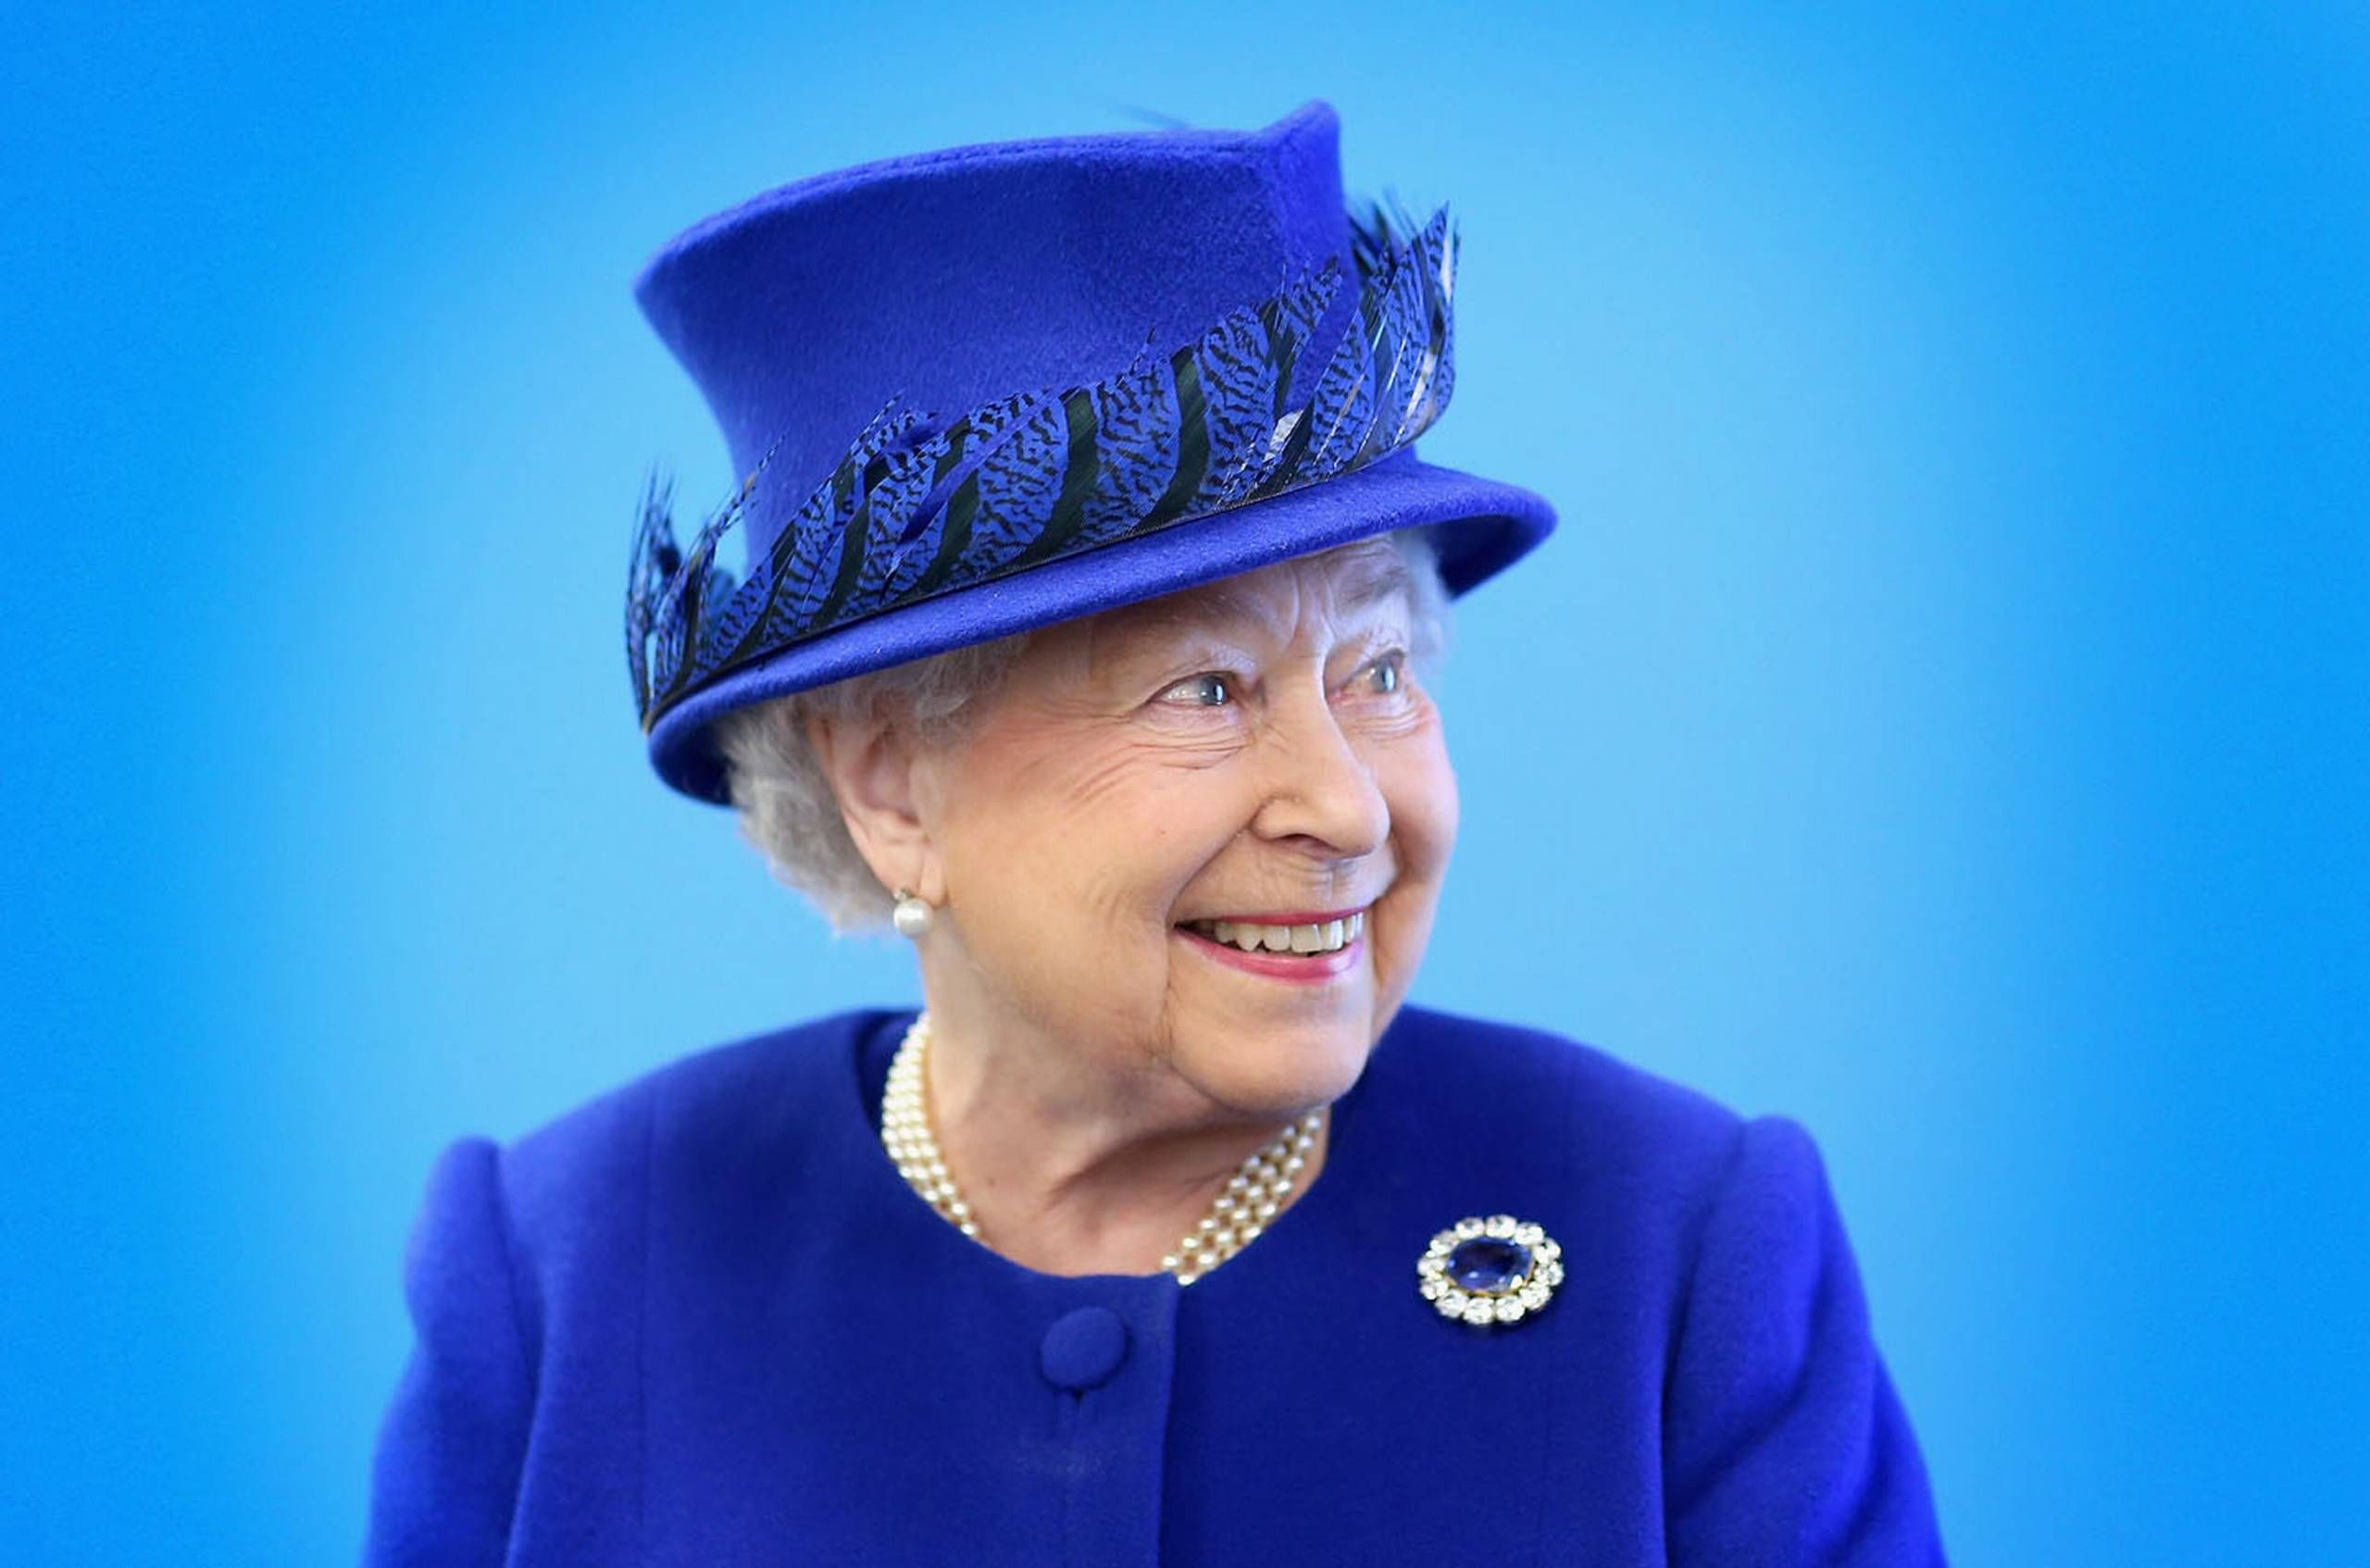 Bøje kultur Udlevering Dronning Elizabeth tjener milliarder på enorme besiddelser